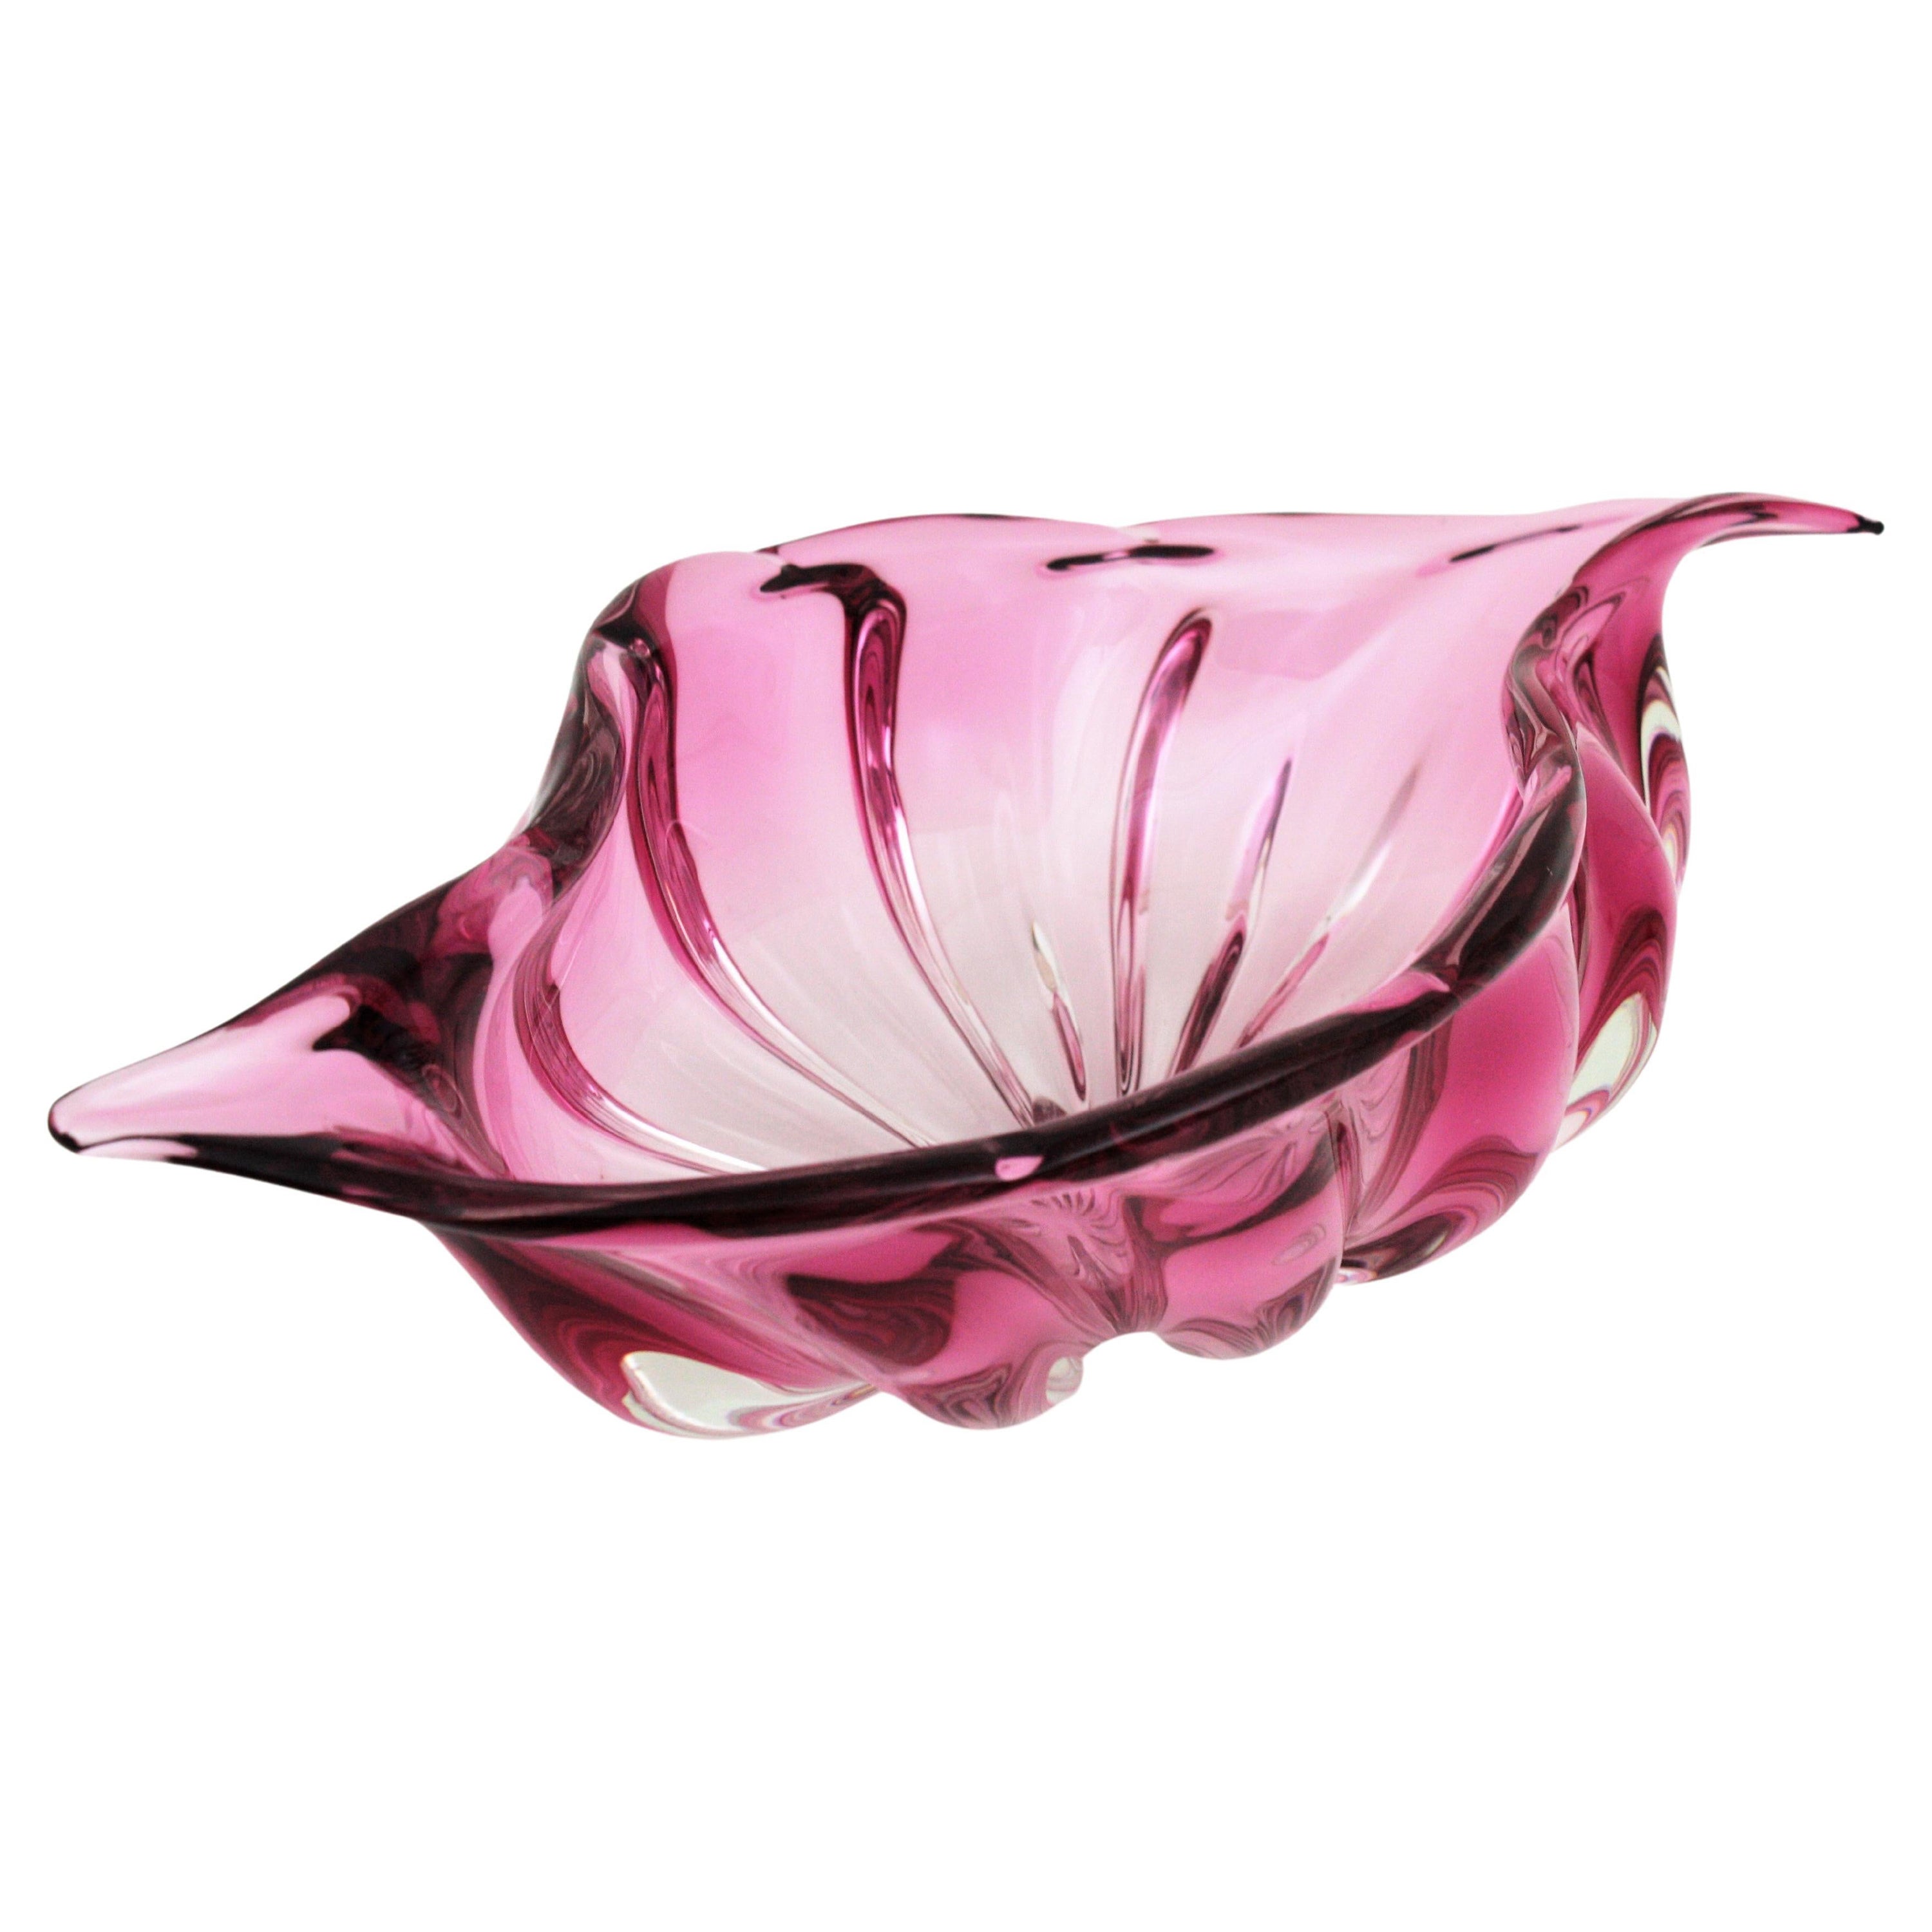 Alfredo Barbini Murano Sommerso Pink Art Glass Centerpiece Decorative Bowl